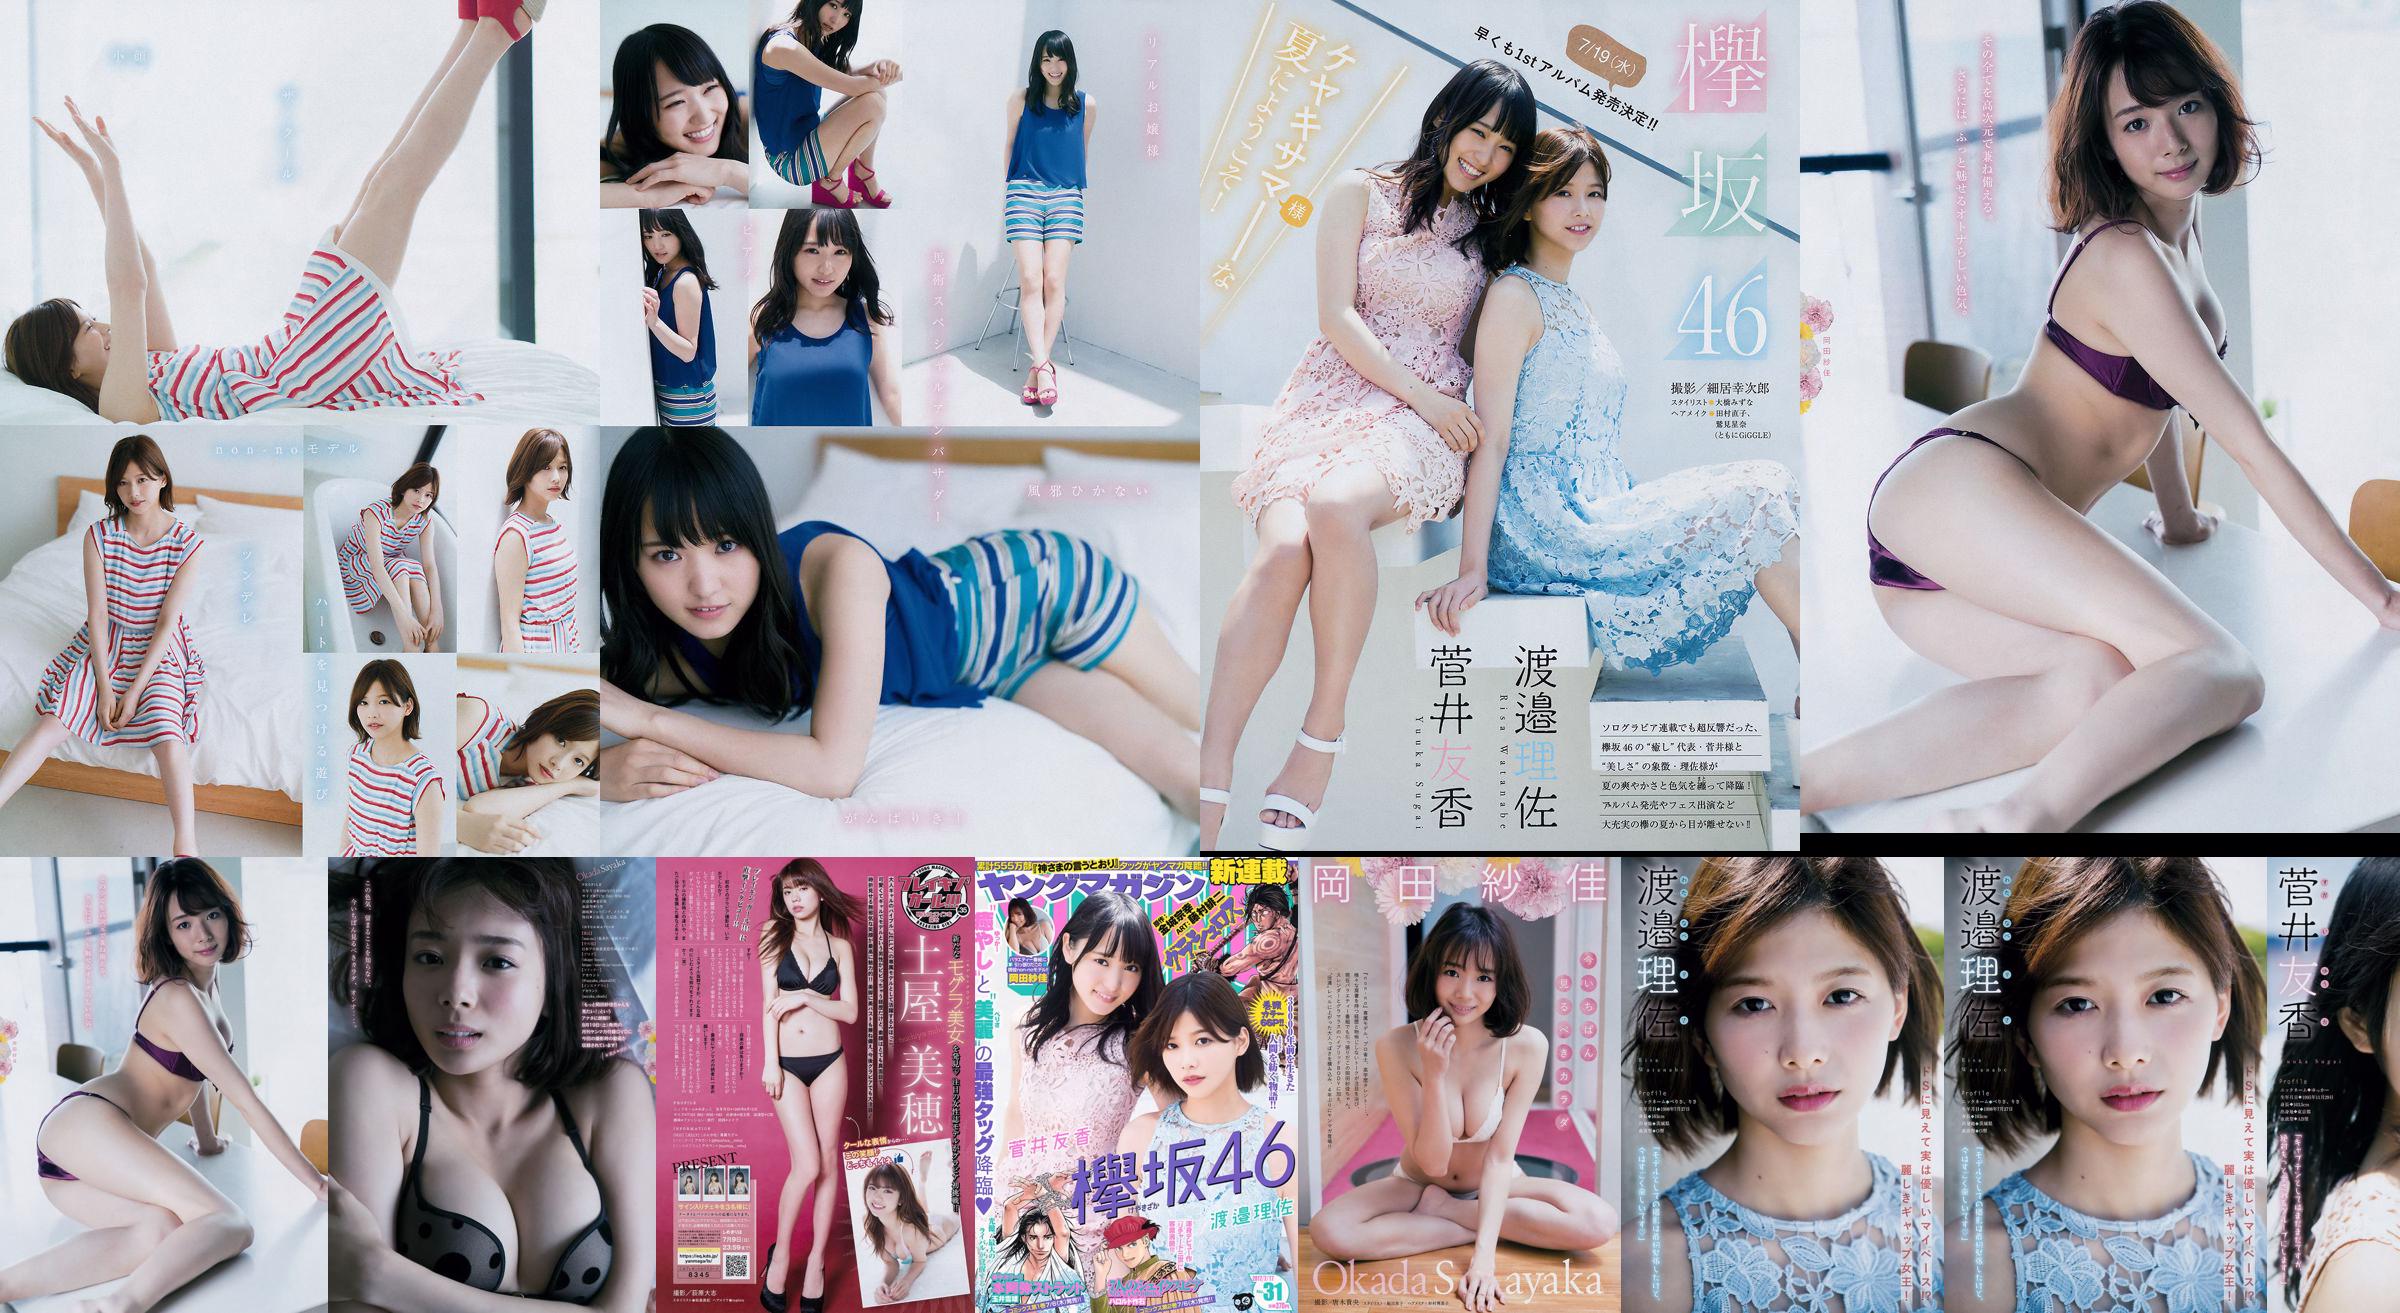 [Revista joven] Watanabe Risa, Sugai Yuka, Okada Saika 2017 No 31 Revista fotográfica No.9c216c Página 6